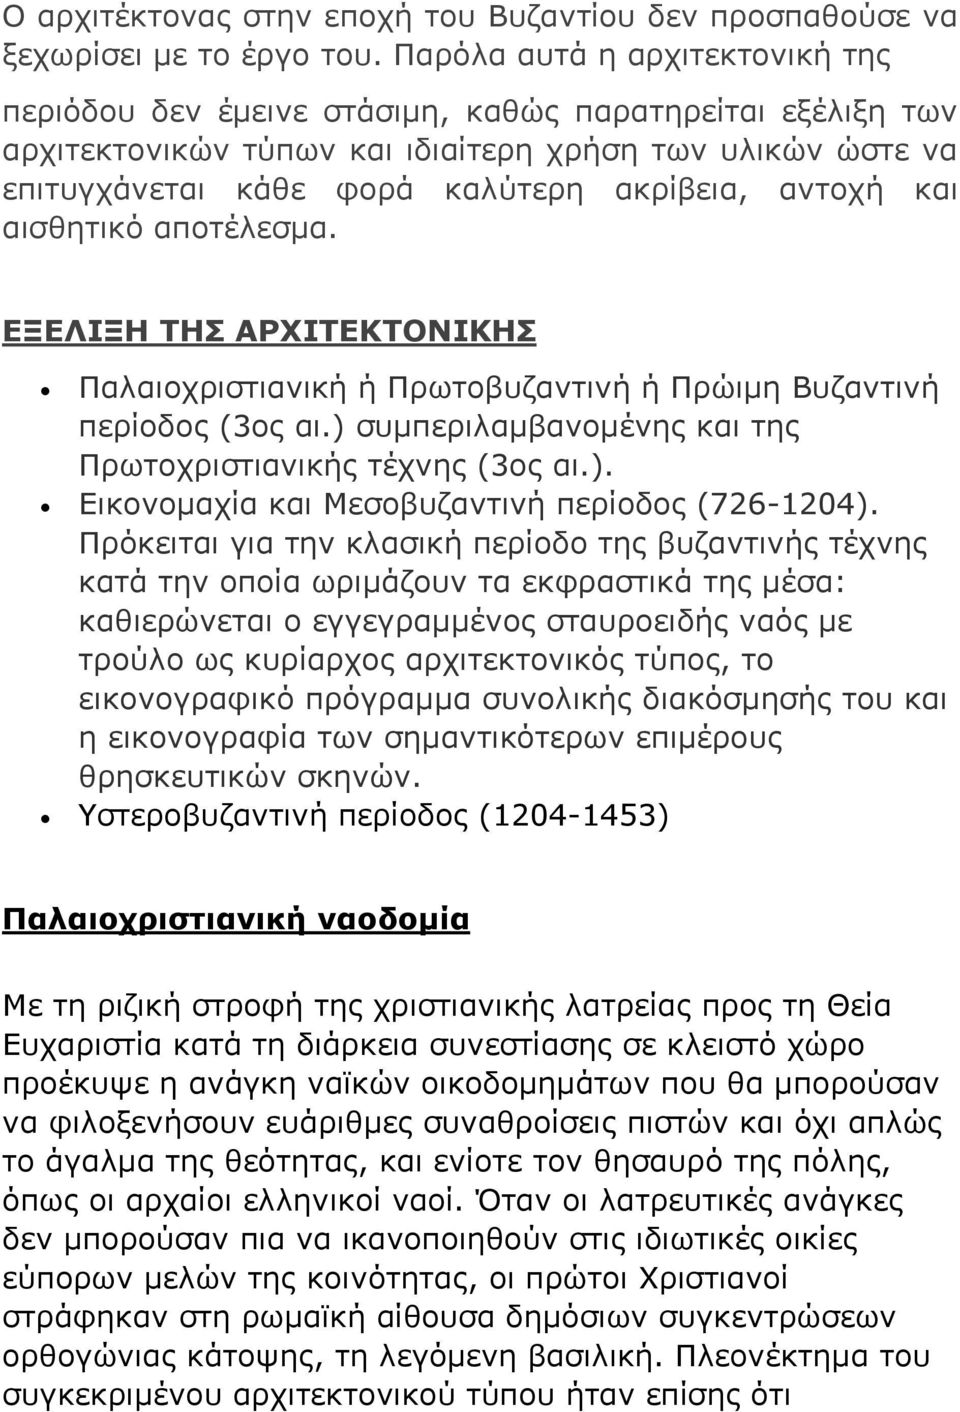 αντοχή και αισθητικό αποτέλεσμα. ΕΞΕΛΙΞΗ ΤΗΣ ΑΡΧΙΤΕΚΤΟΝΙΚΗΣ Παλαιοχριστιανική ή Πρωτοβυζαντινή ή Πρώιμη Βυζαντινή περίοδος (3ος αι.) συμπεριλαμβανομένης και της Πρωτοχριστιανικής τέχνης (3ος αι.). Εικονομαχία και Μεσοβυζαντινή περίοδος (726-1204).